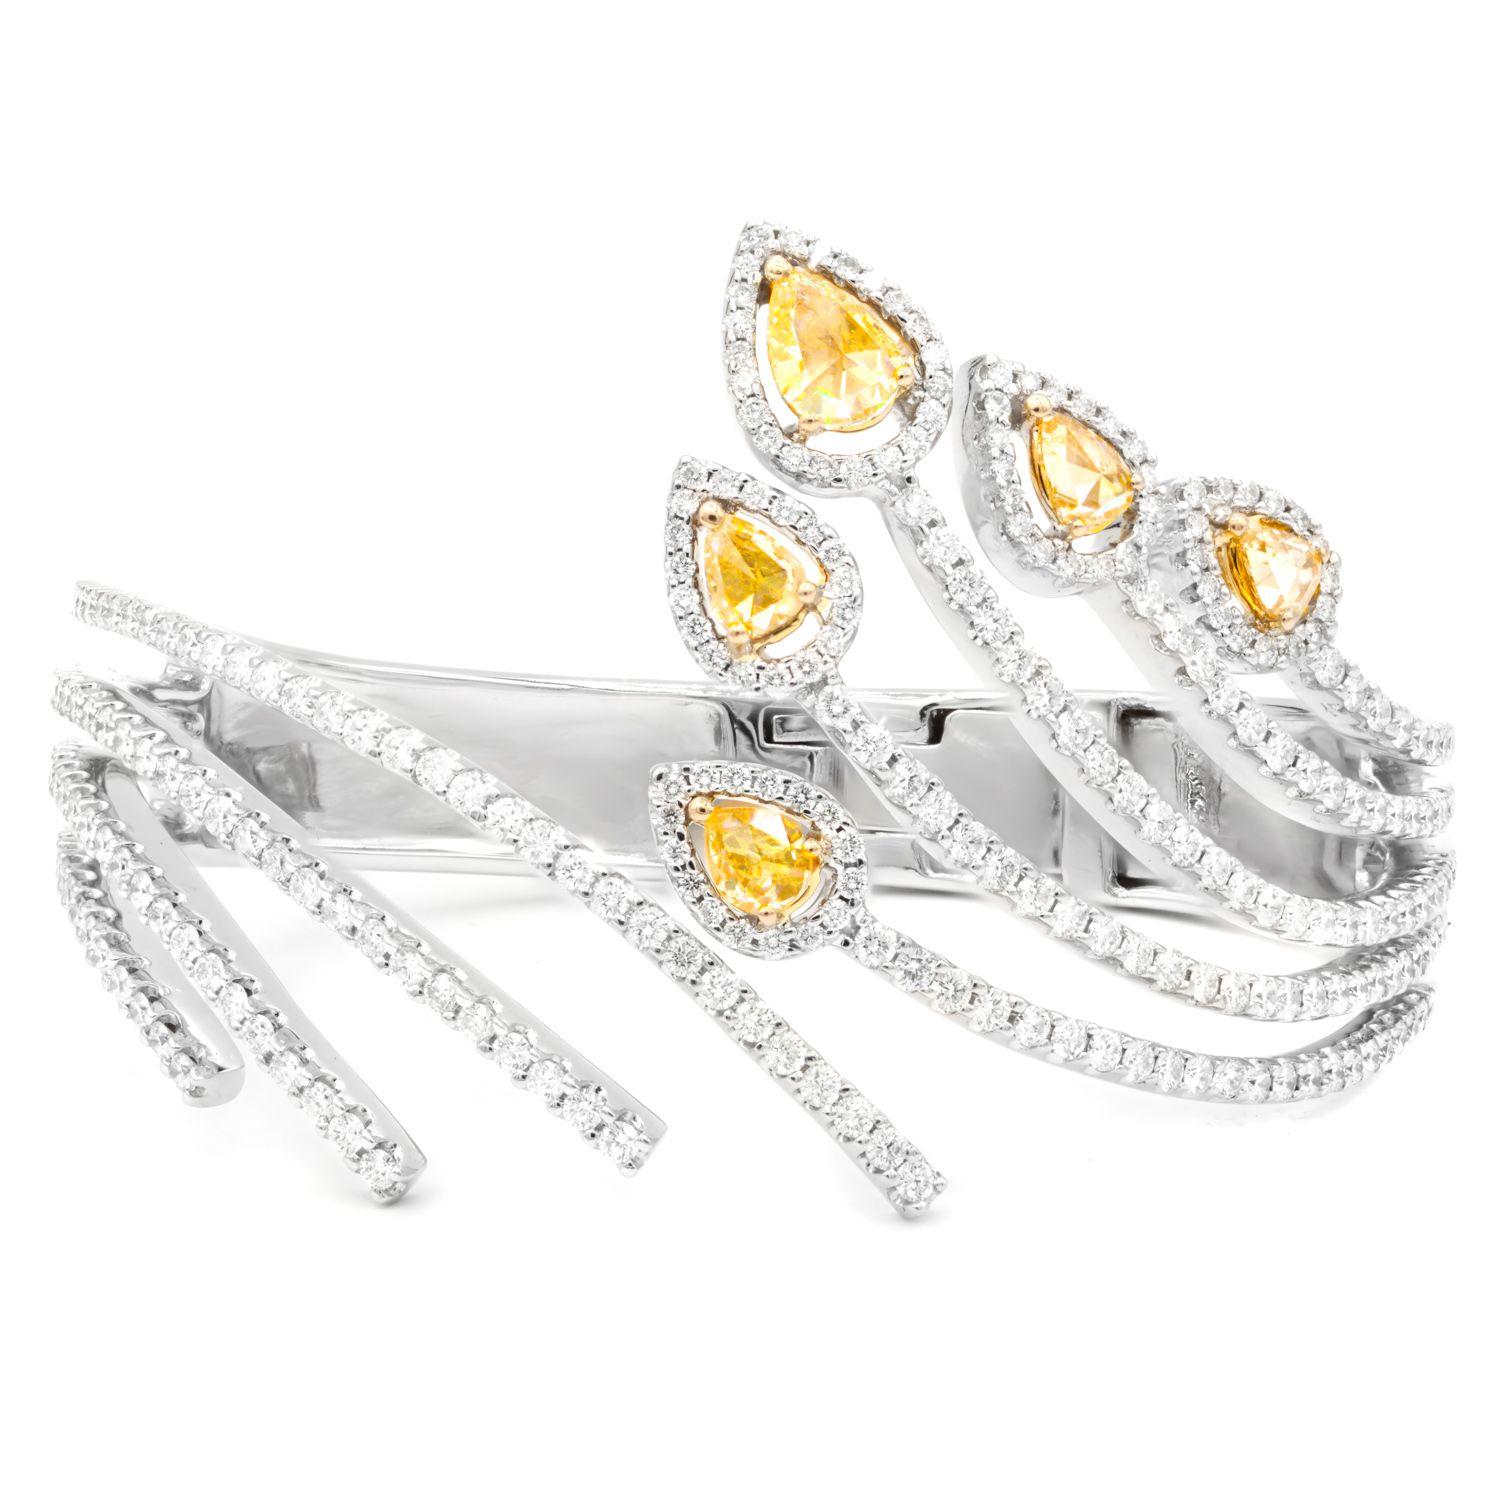 Spiralförmiger Armreif aus 18 kt Weißgold mit weißen und gelben Diamanten in einem Blattdesign mit insgesamt 8,00 cts tw Diamanten besetzt